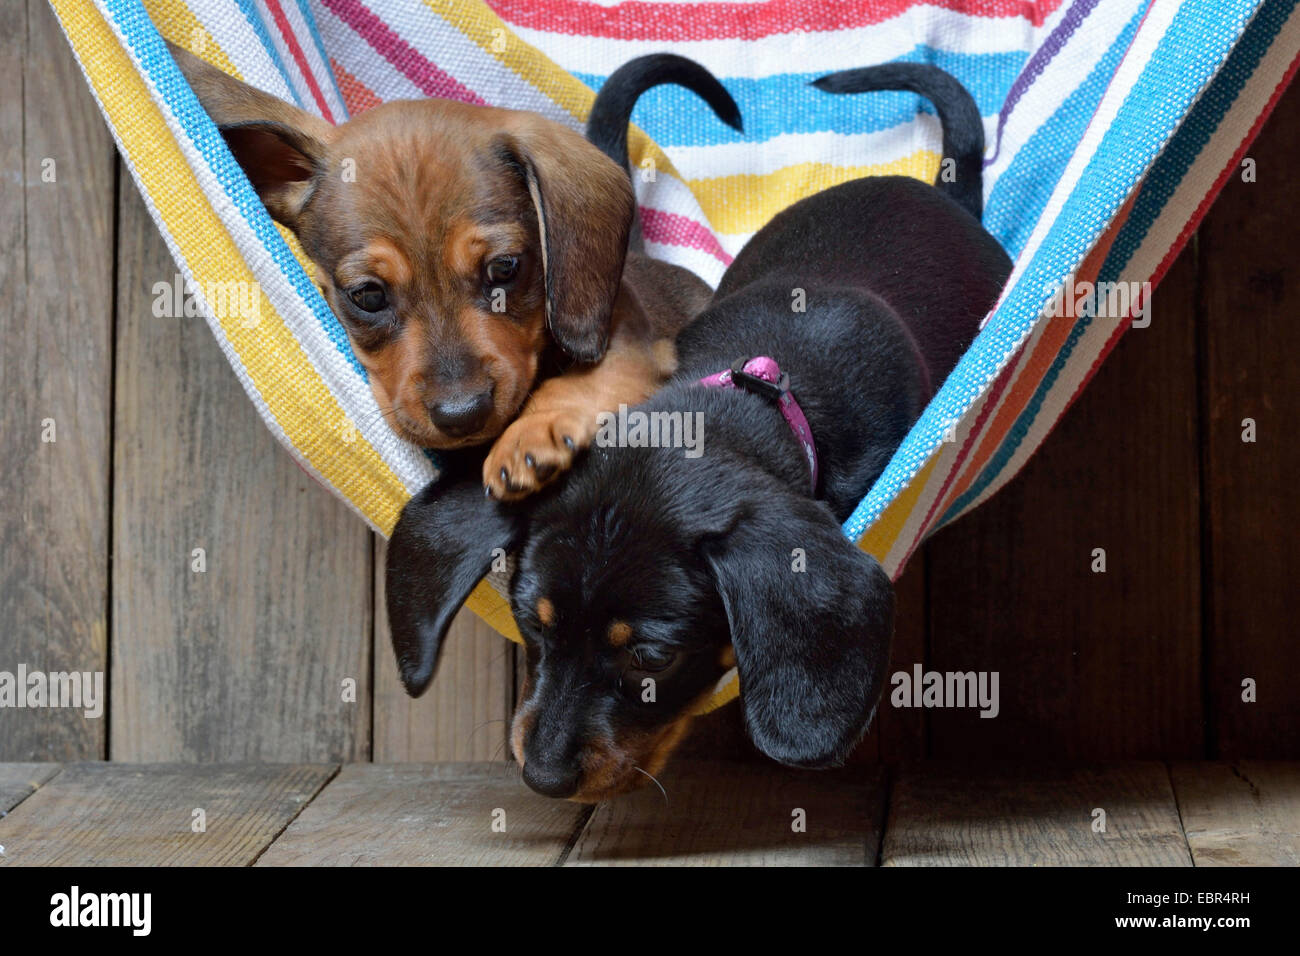 Teckel à poil court, à poil court, chien saucisse chien domestique (Canis lupus f. familiaris), deux chiots teckel tussling dans un hamac, Allemagne Banque D'Images